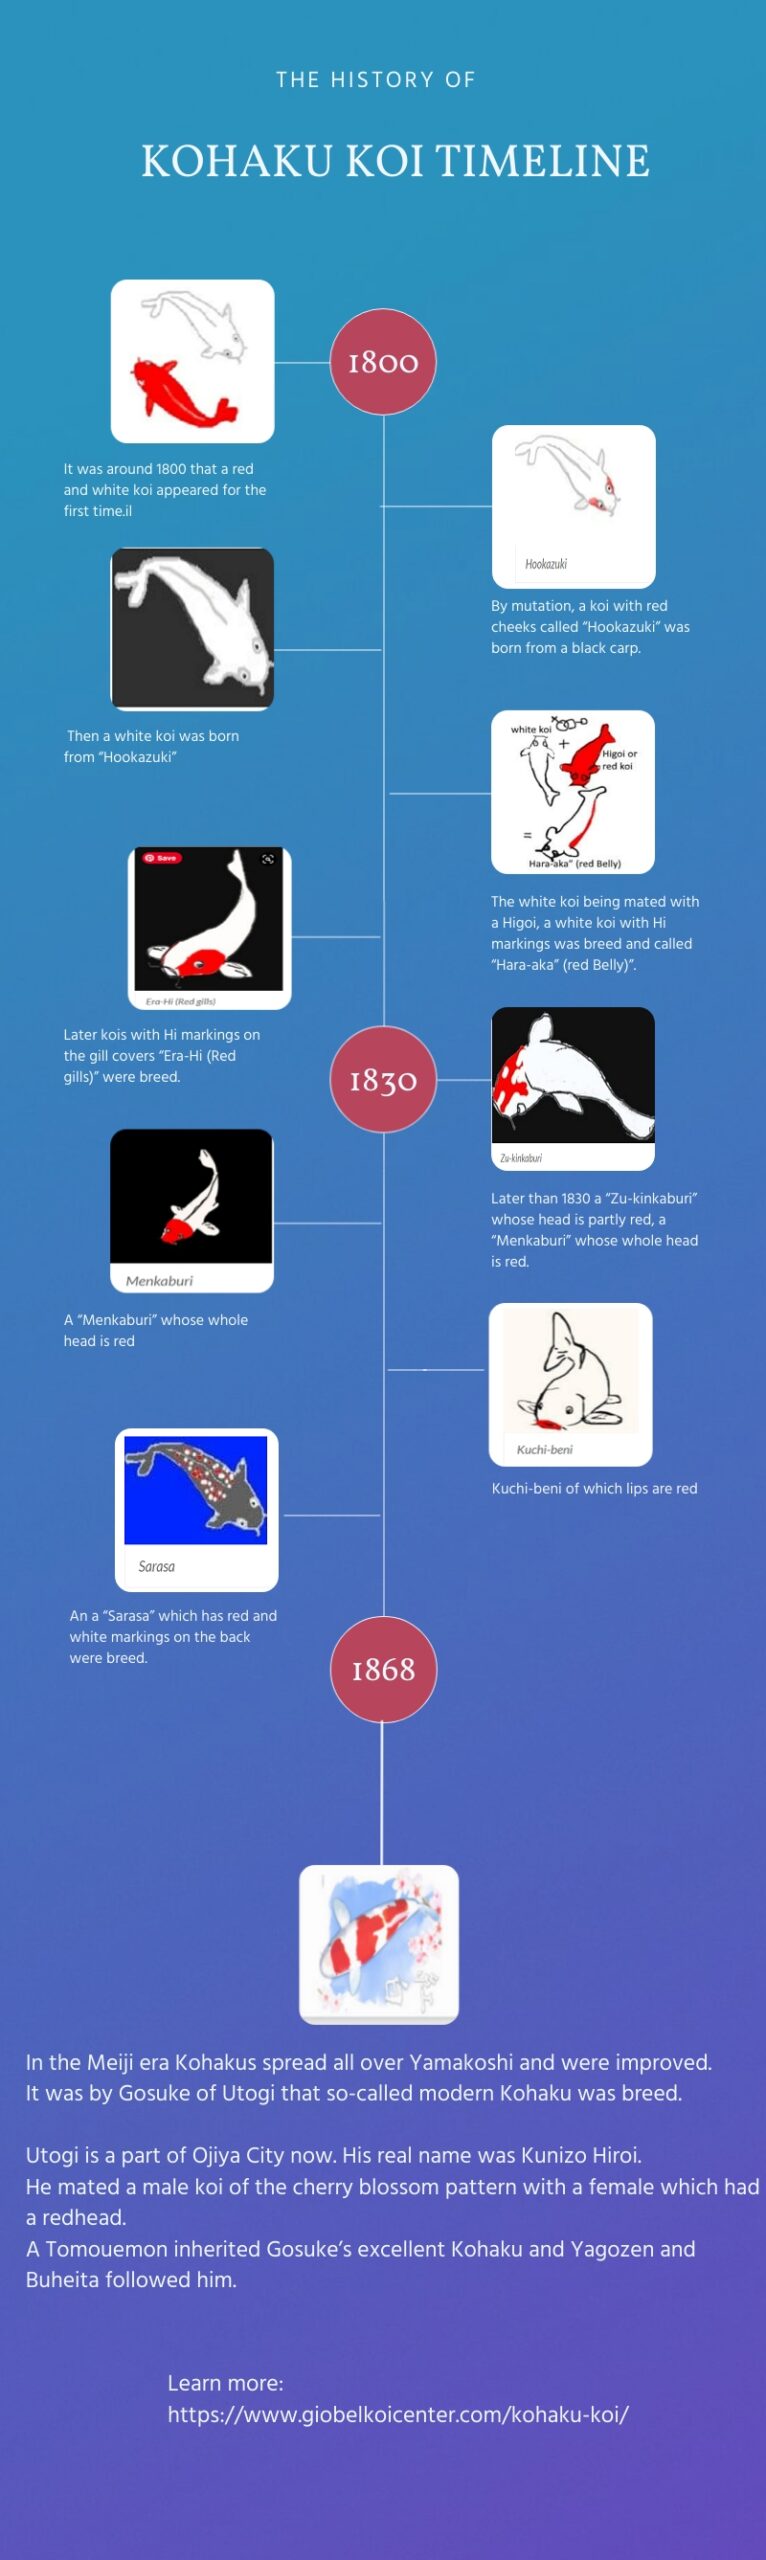 kohaku koi timeline history infographics 